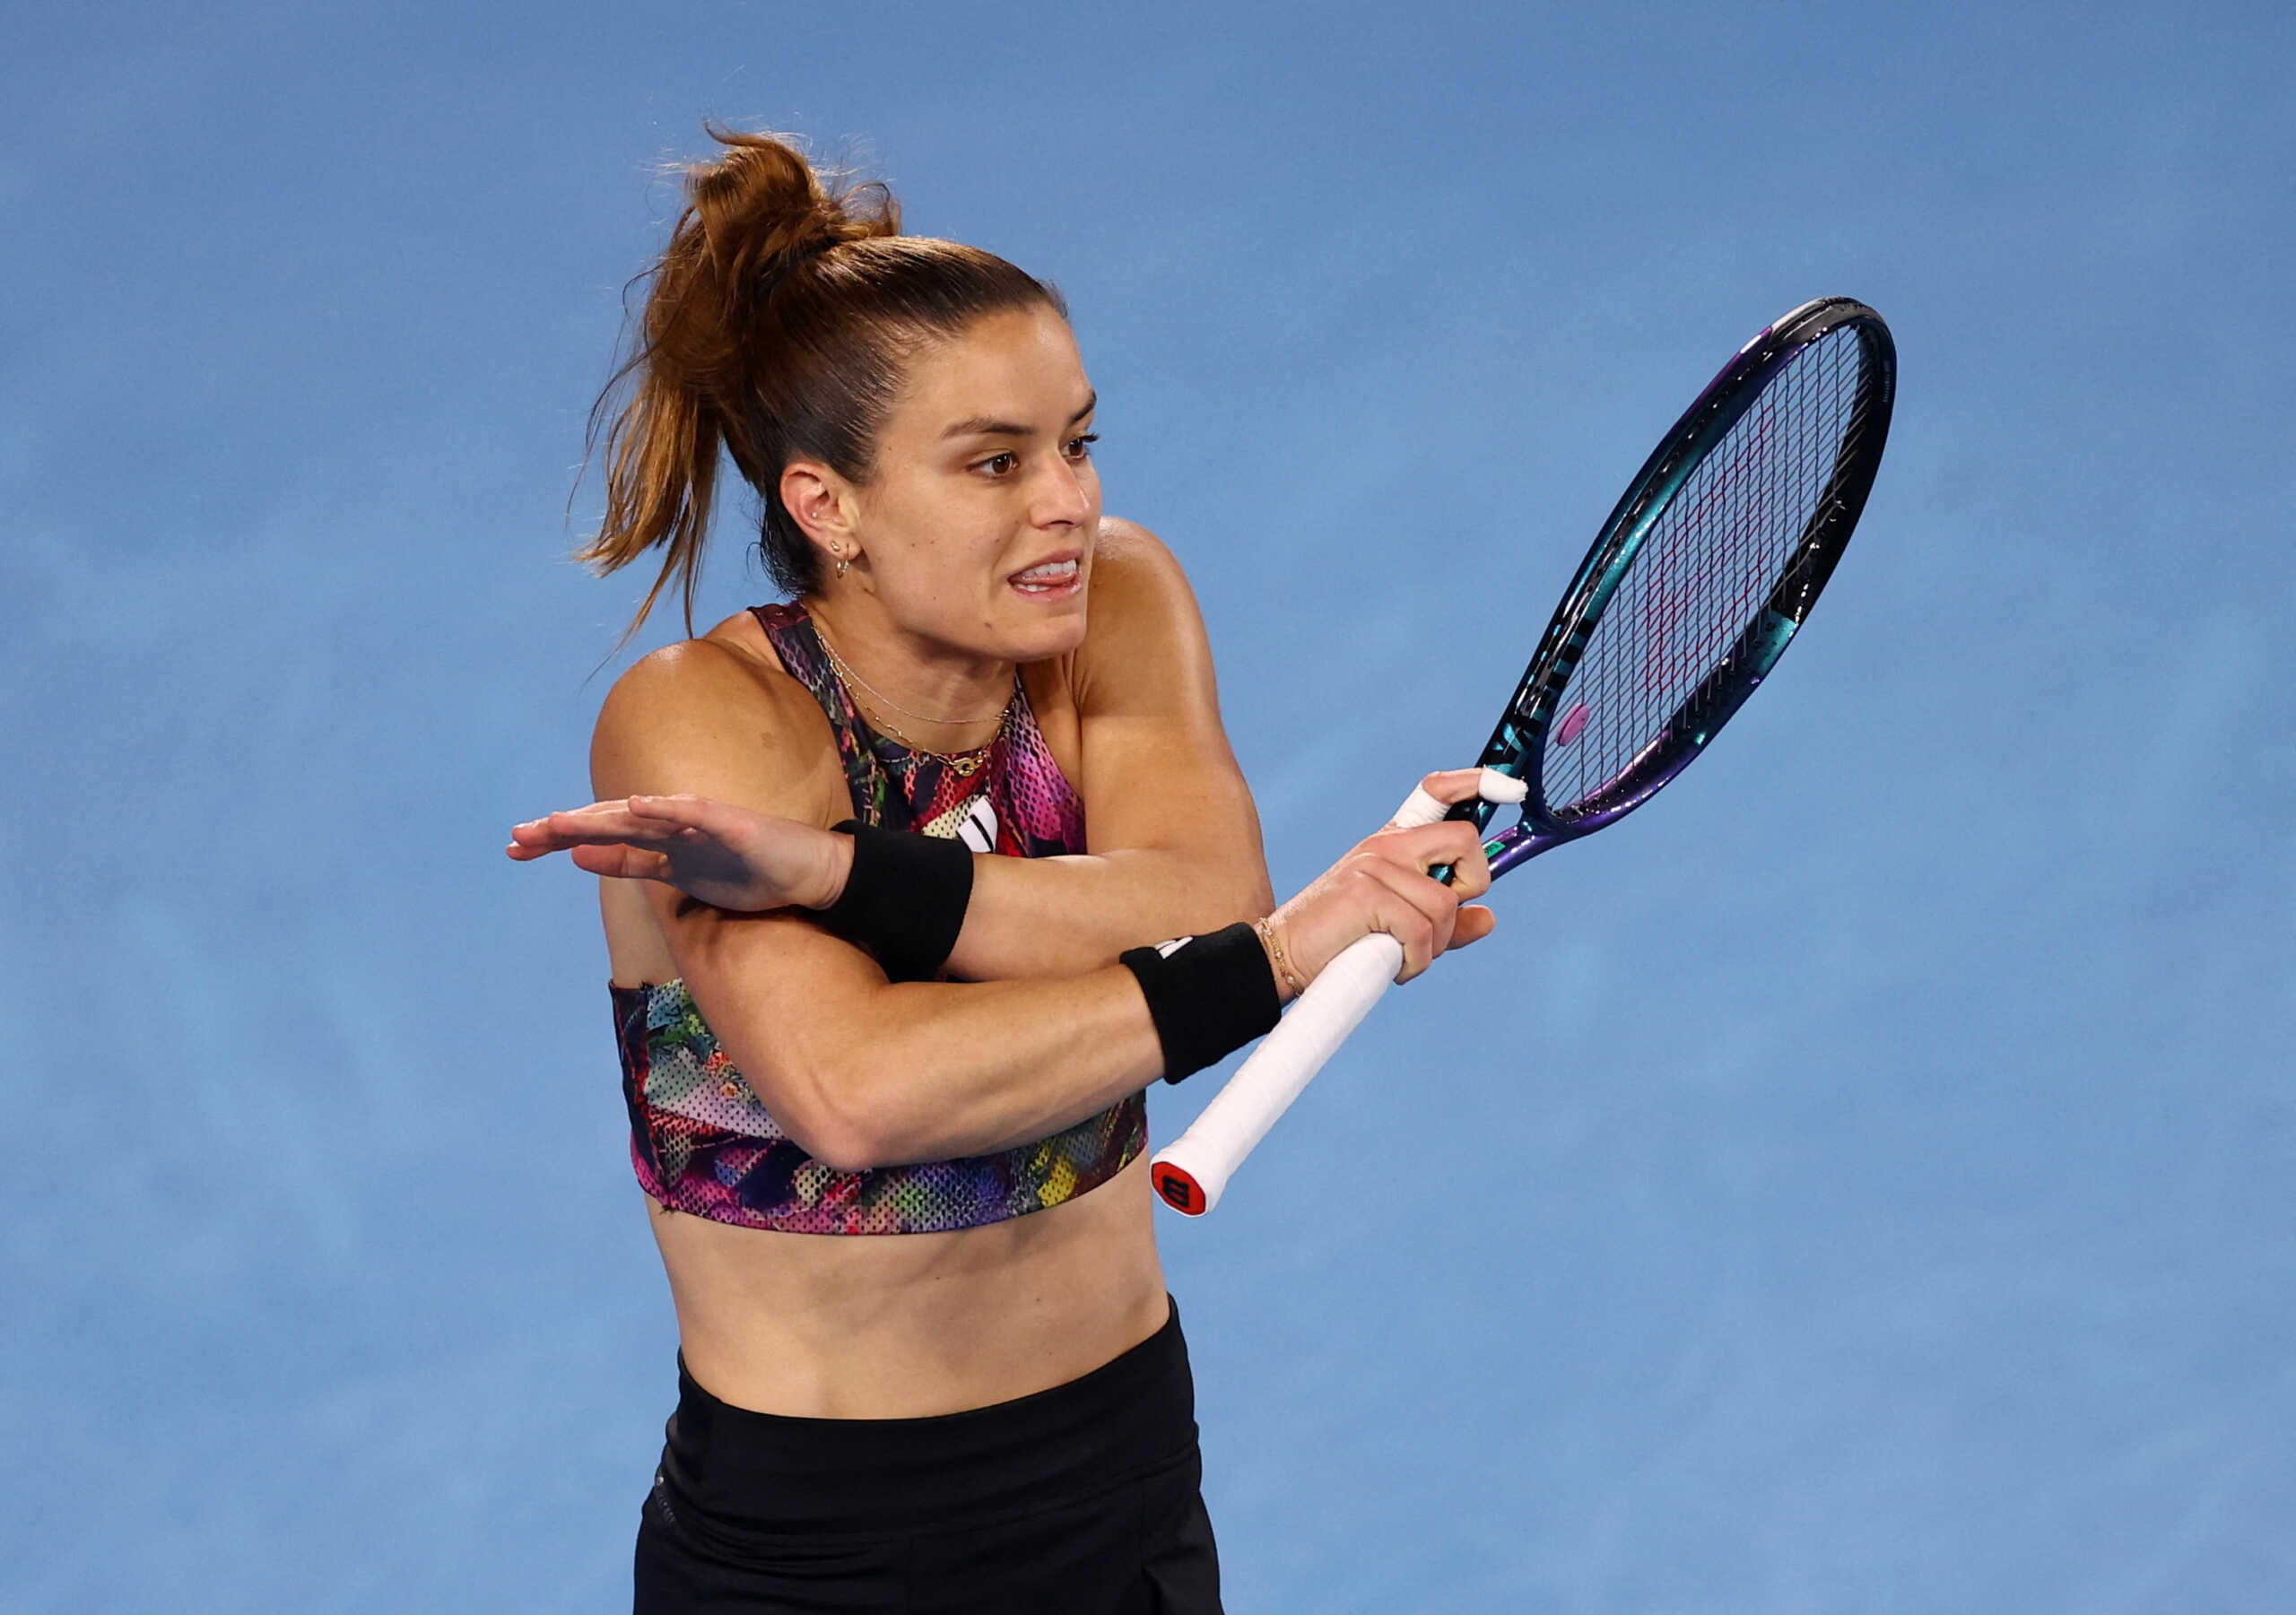 Ζου Λι – Μαρία Σάκκαρη 2-1: Πρόωρος αποκλεισμός για την Ελληνίδα τενίστρια από το Australian Open